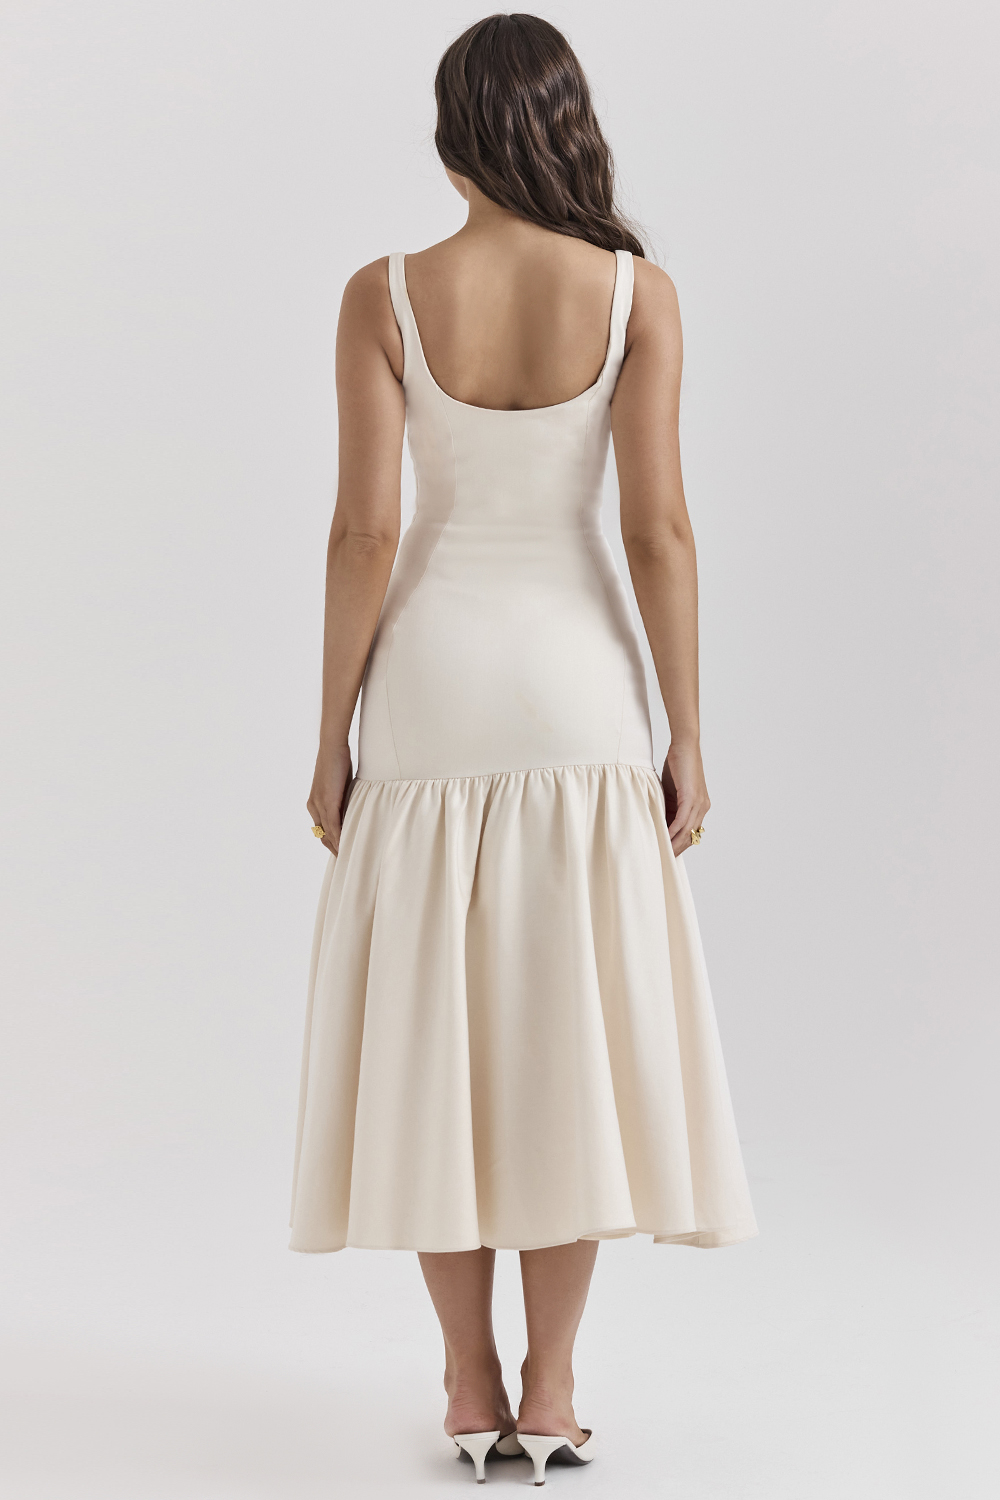 Clothing : Midi Dresses : 'Amore' Vintage Cream Midi Dress